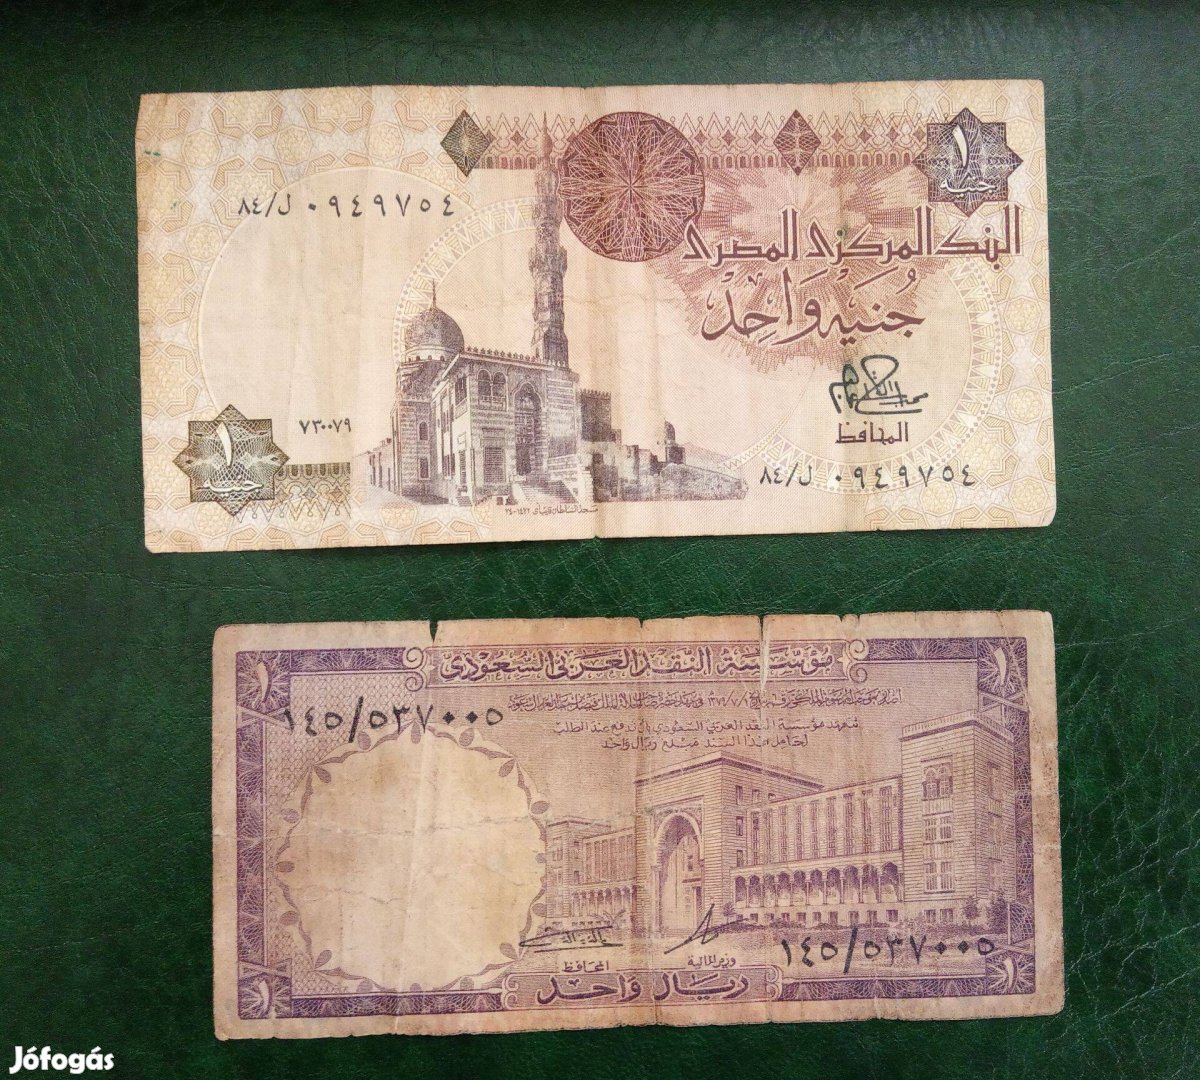 Szaúd Arábia 1 Riyal 1961 és Egyiptomi 1 Pound (font)